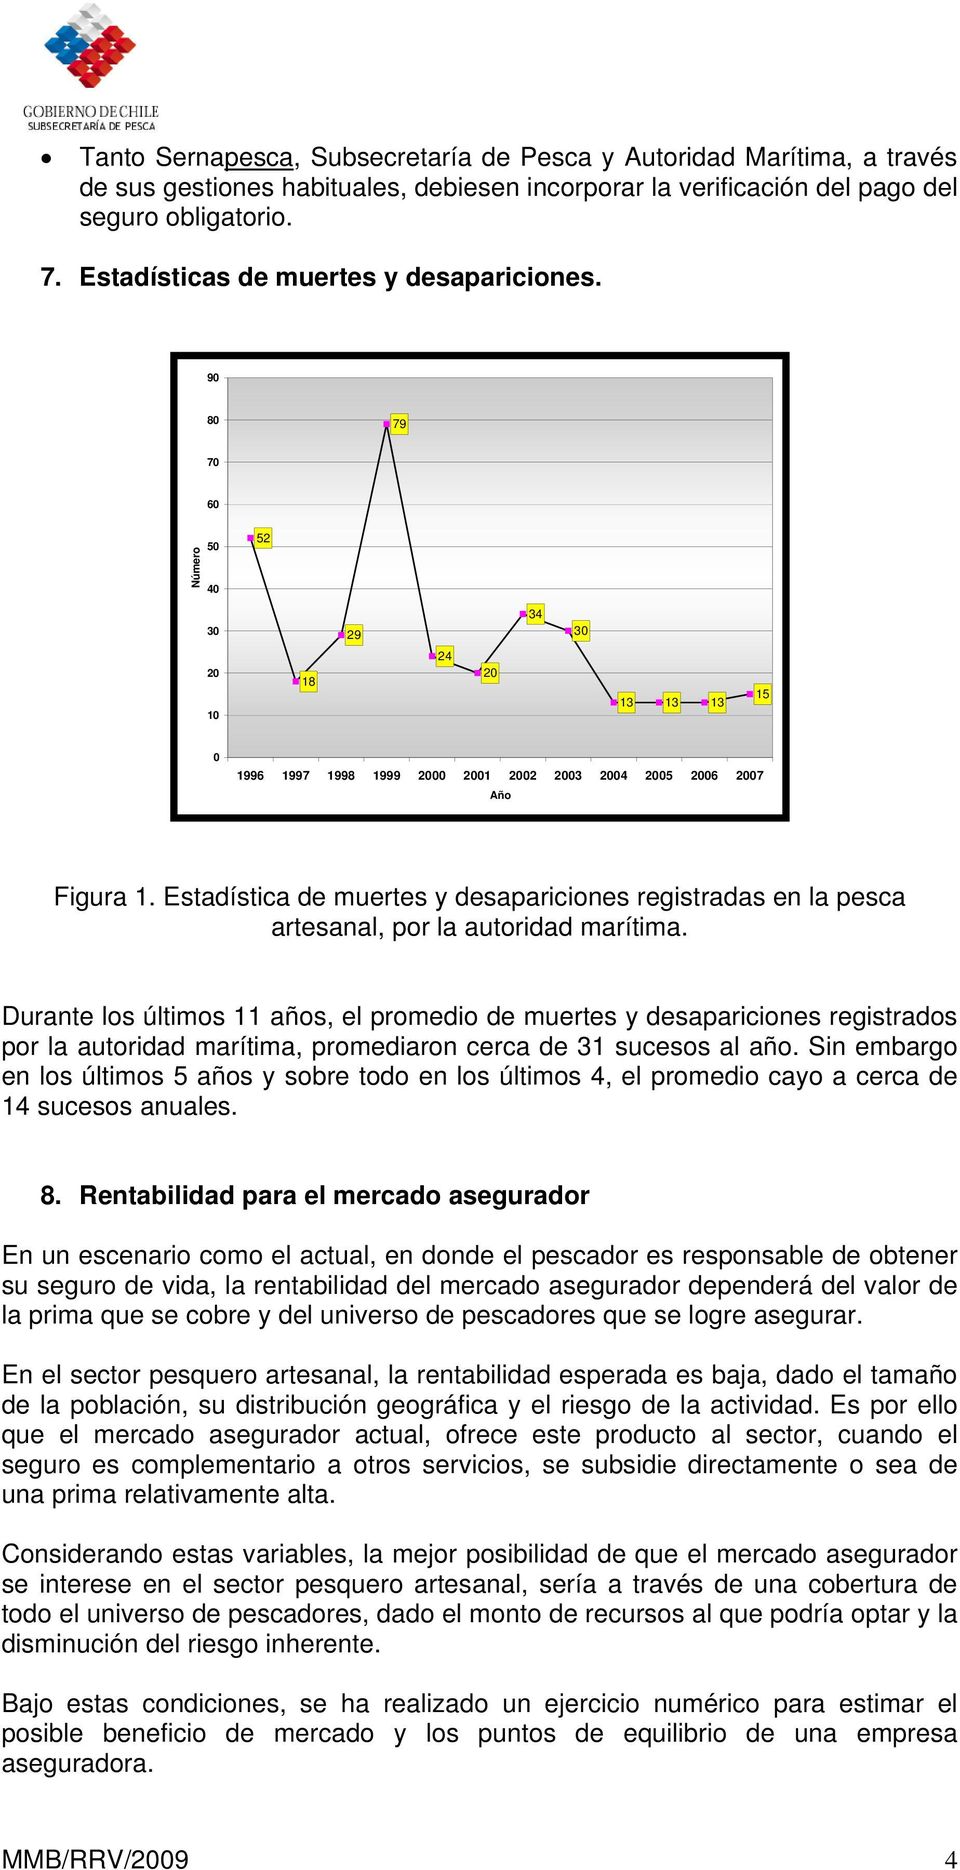 Estadística de muertes y desapariciones registradas en la pesca artesanal, por la autoridad marítima.